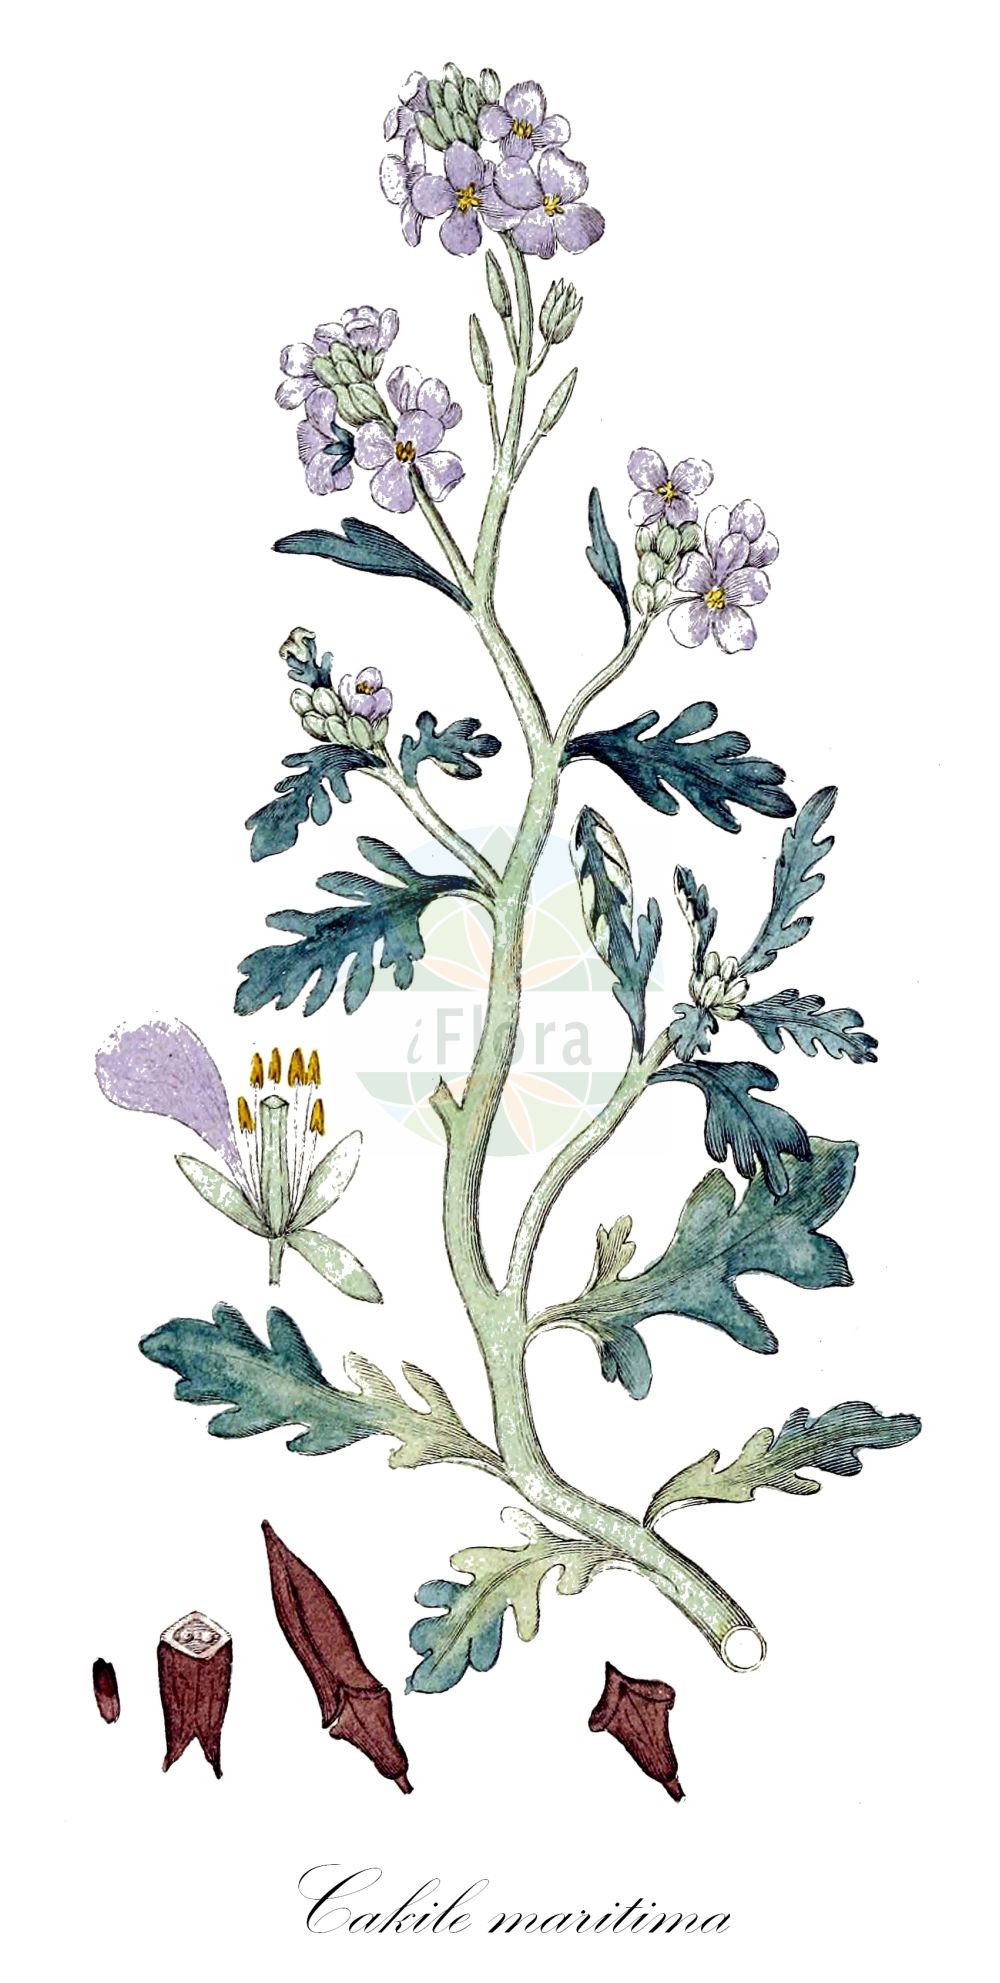 Historische Abbildung von Cakile maritima (Europäischer Meersenf - Sea Rocket). Das Bild zeigt Blatt, Bluete, Frucht und Same. ---- Historical Drawing of Cakile maritima (Europäischer Meersenf - Sea Rocket). The image is showing leaf, flower, fruit and seed.(Cakile maritima,Europäischer Meersenf,Sea Rocket,Bunias cakile,Cakile aegyptiaca,Cakile aegyptica,Cakile hispanica,Cakile littoralis,Cakile maritima,Cakile monosperma,Pteroneurum bipinnatum,Europaeischer Meersenf,Baltischer Meersenf,Sea Rocket,European Sea Rocket,Cakile,Meersenf,Searocket,Brassicaceae,Kreuzblütler,Cabbage family,Blatt,Bluete,Frucht,Same,leaf,flower,fruit,seed,Svensk Botanik (Svensk Botanik))